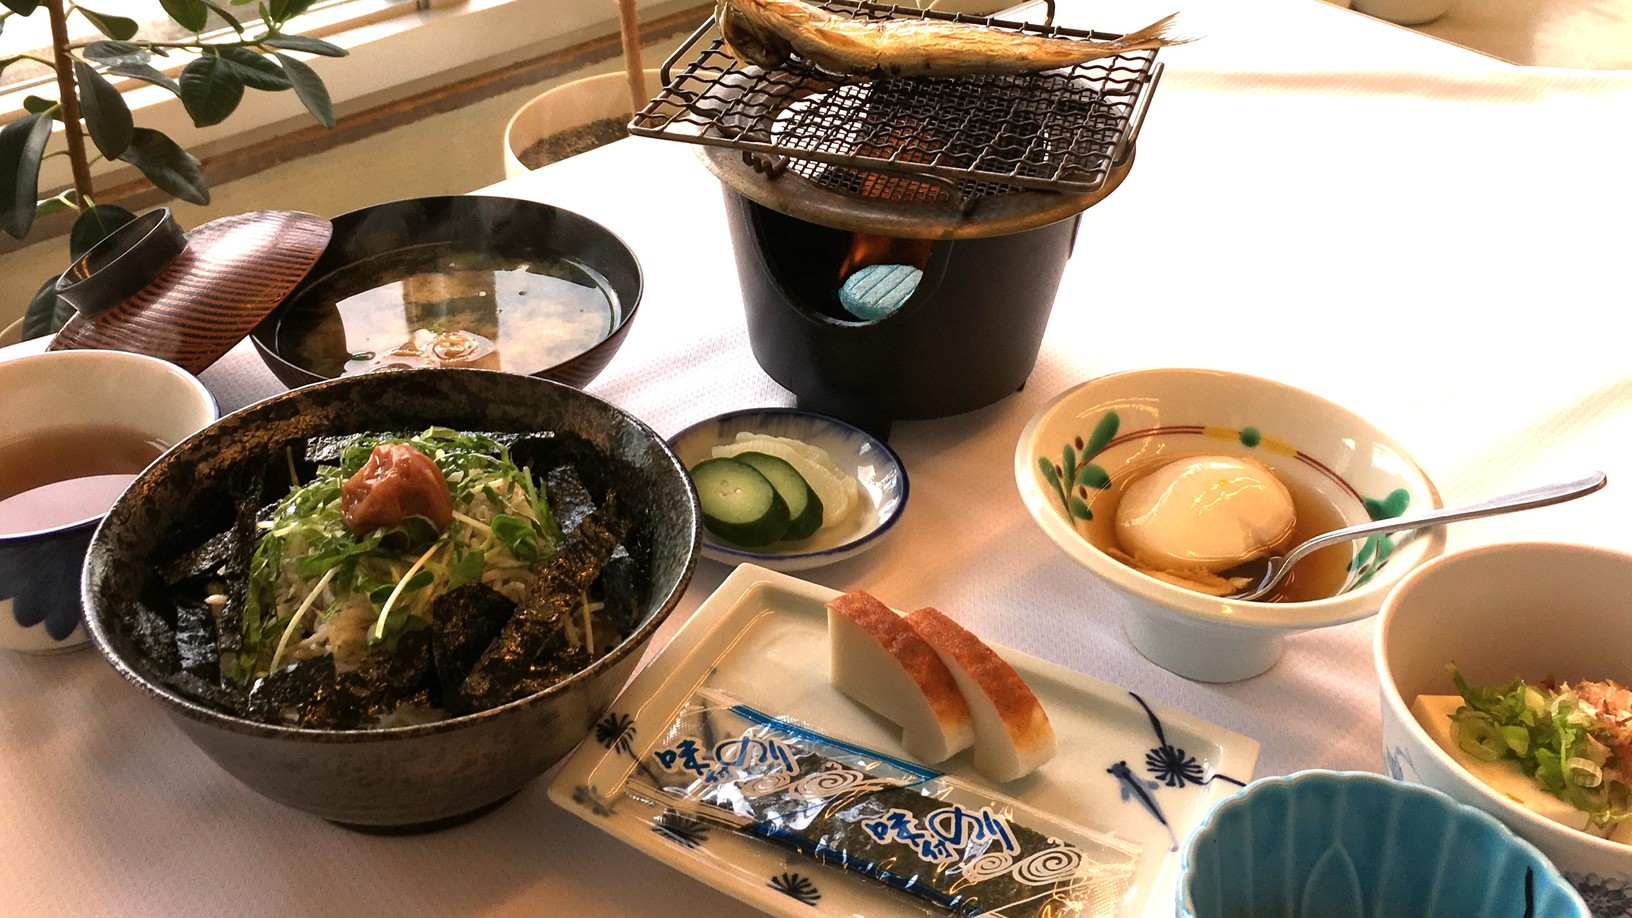 「釜揚げしらす丼がついた和歌浦の健康和朝食」地元直産のしらす丼で朝から元気いっぱい・朝食付プラン